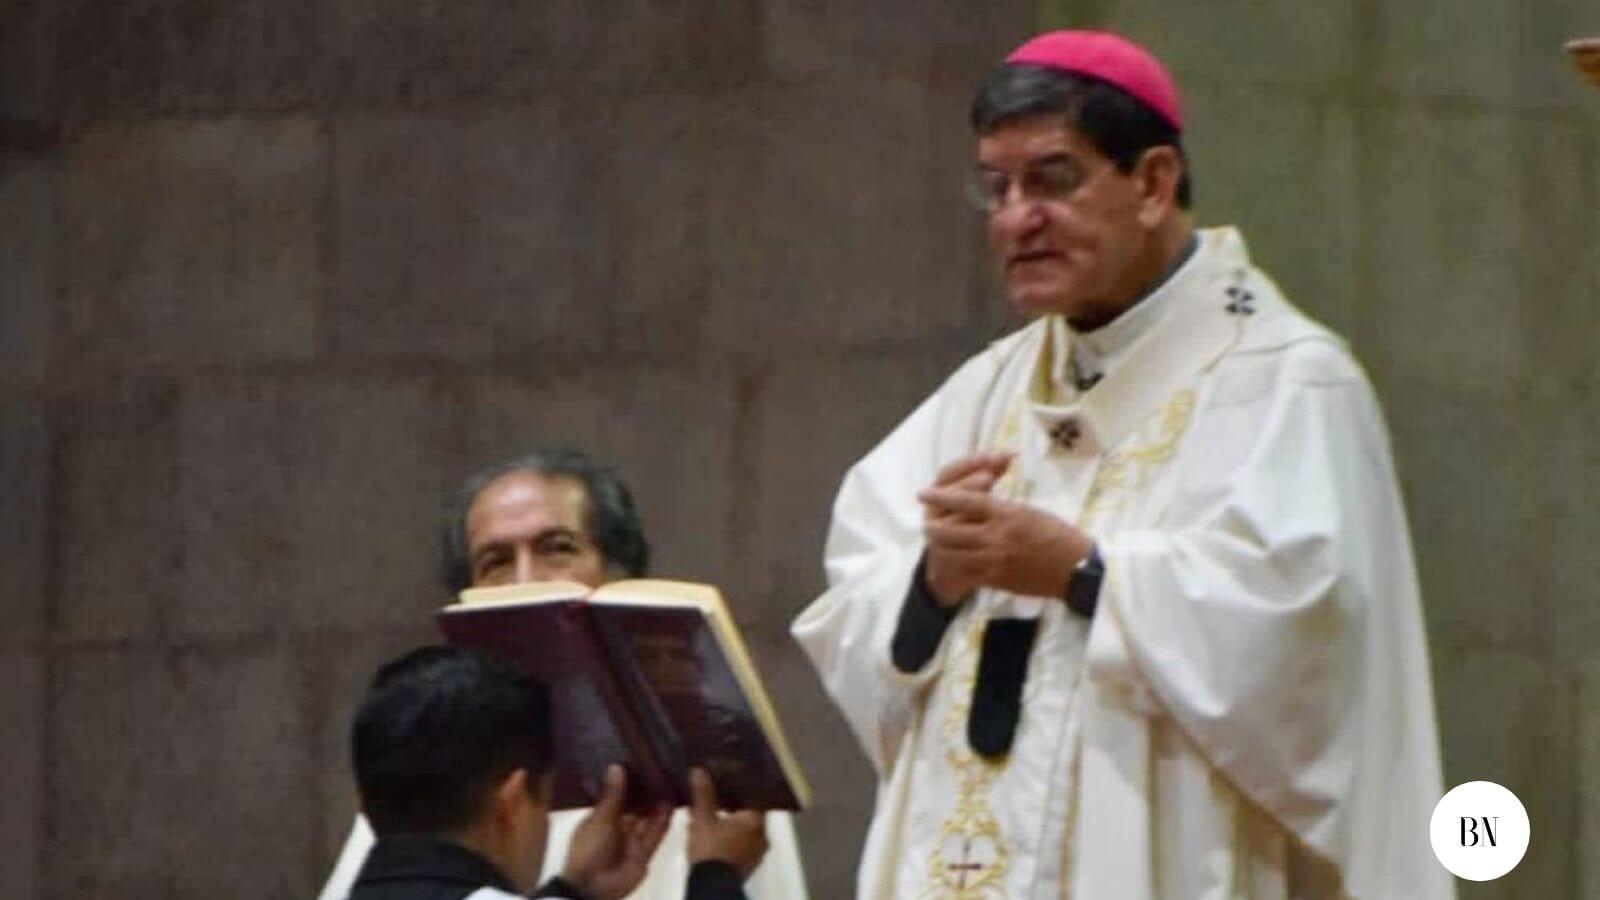 La unión libre, es un “mientras  tanto”: Arzobispo de Toluca